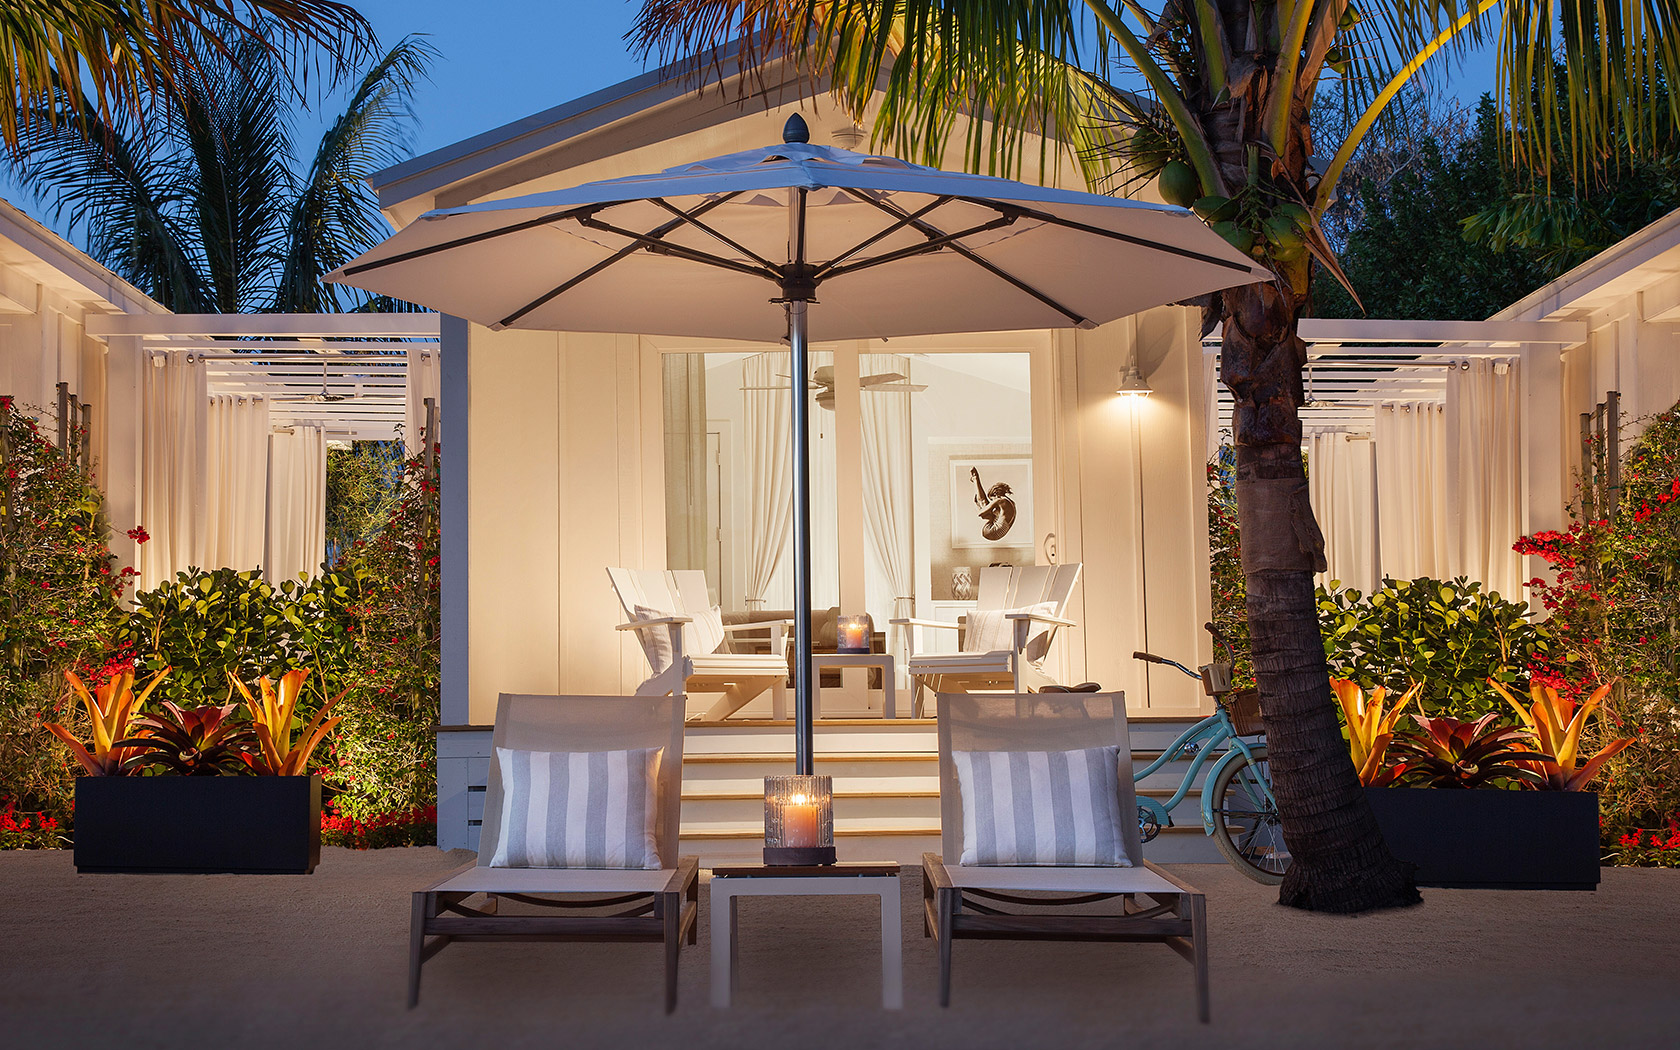 Florida Keys Makes Luxury Push With New Hotel Openings  Luxury Travel